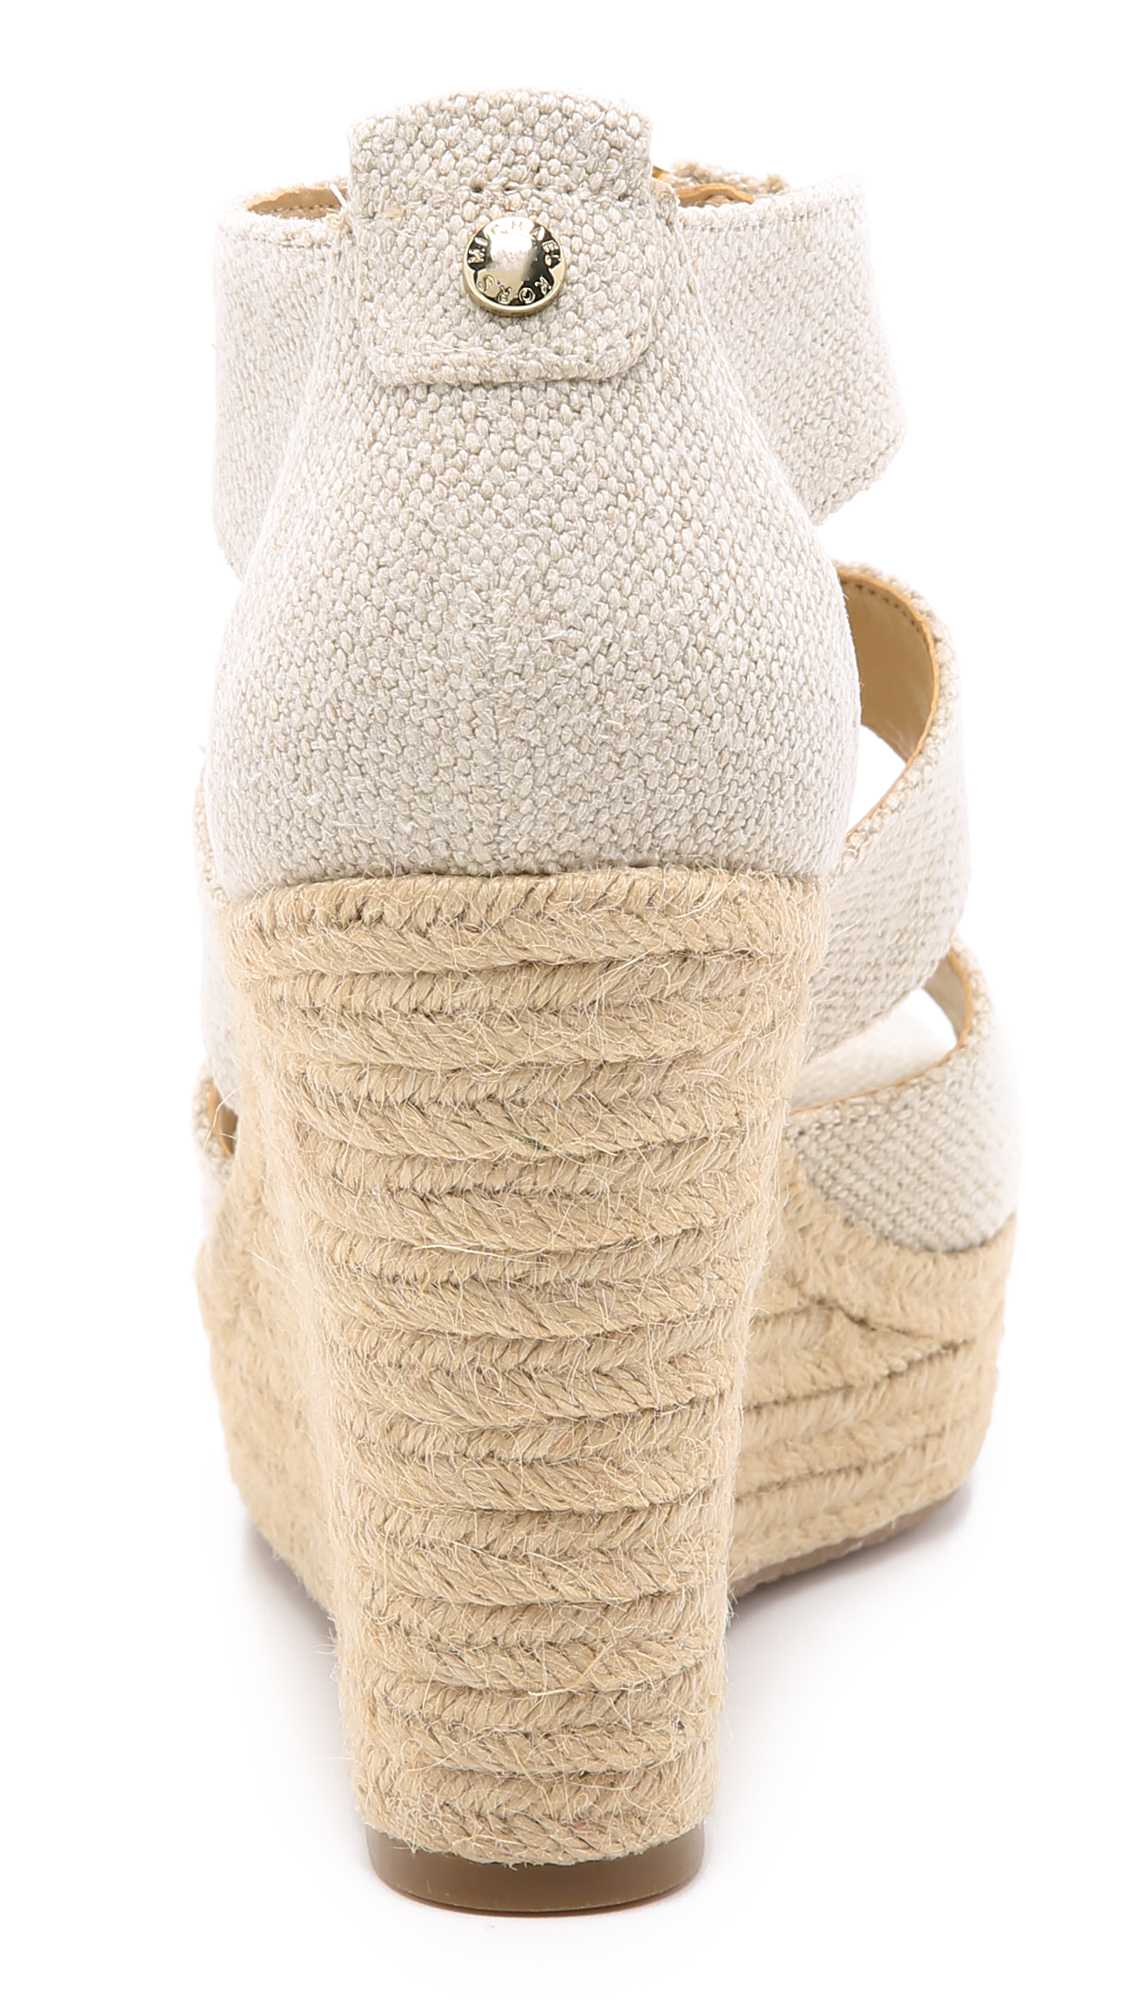 MICHAEL Michael Kors Damita Wedge Sandals in Natural | Lyst